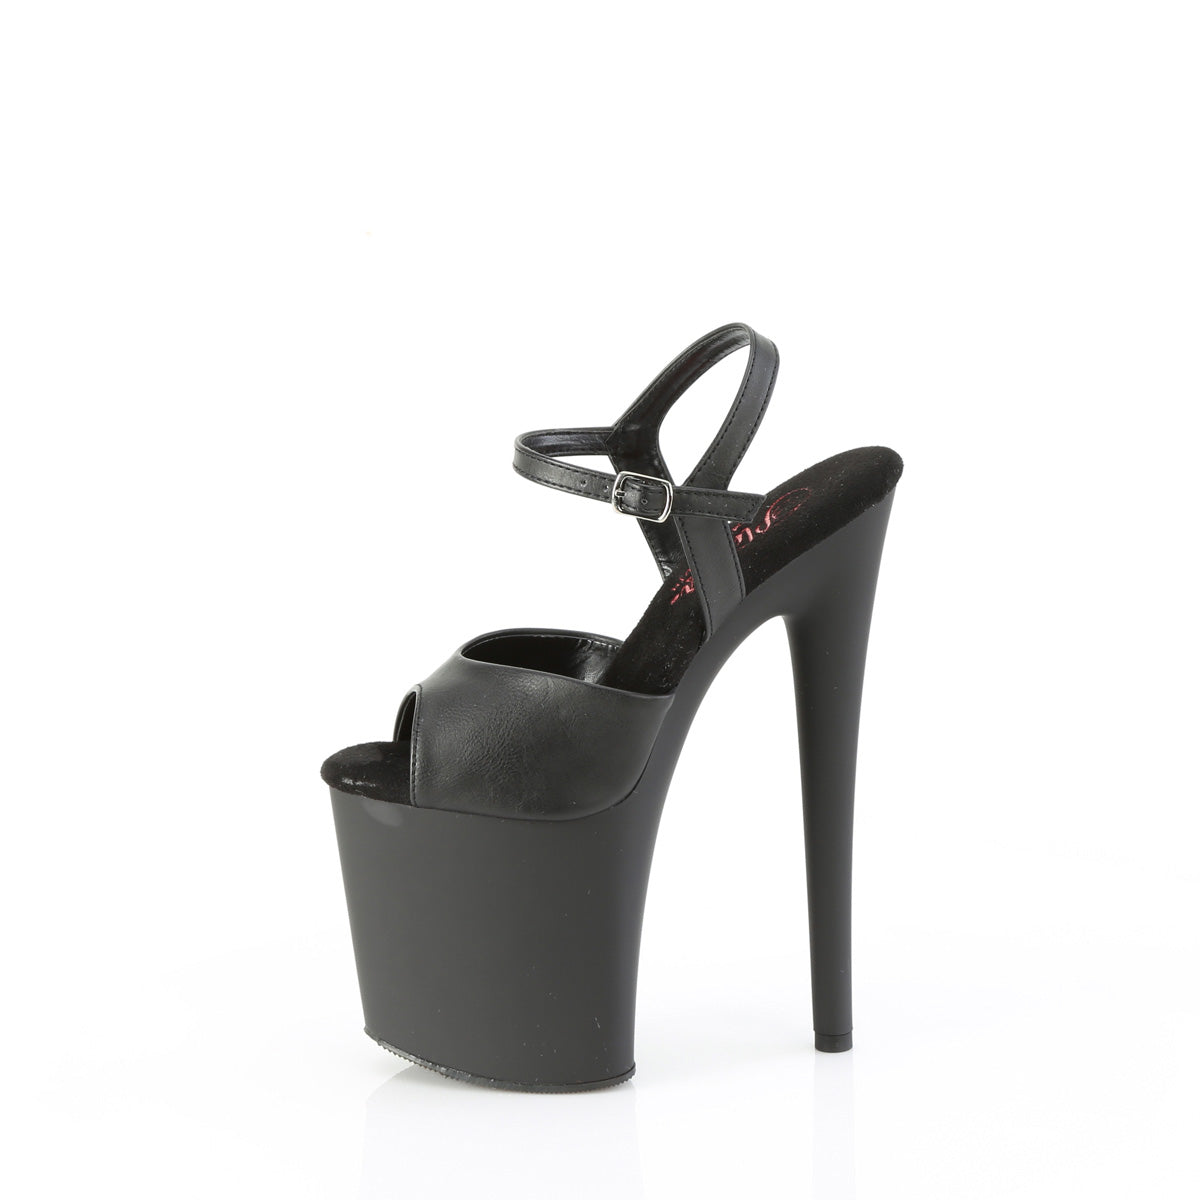 NAUGHTY-809 Pleaser Black Faux Leather/Black Matte Platform Shoes [Pole Dance Shoes]